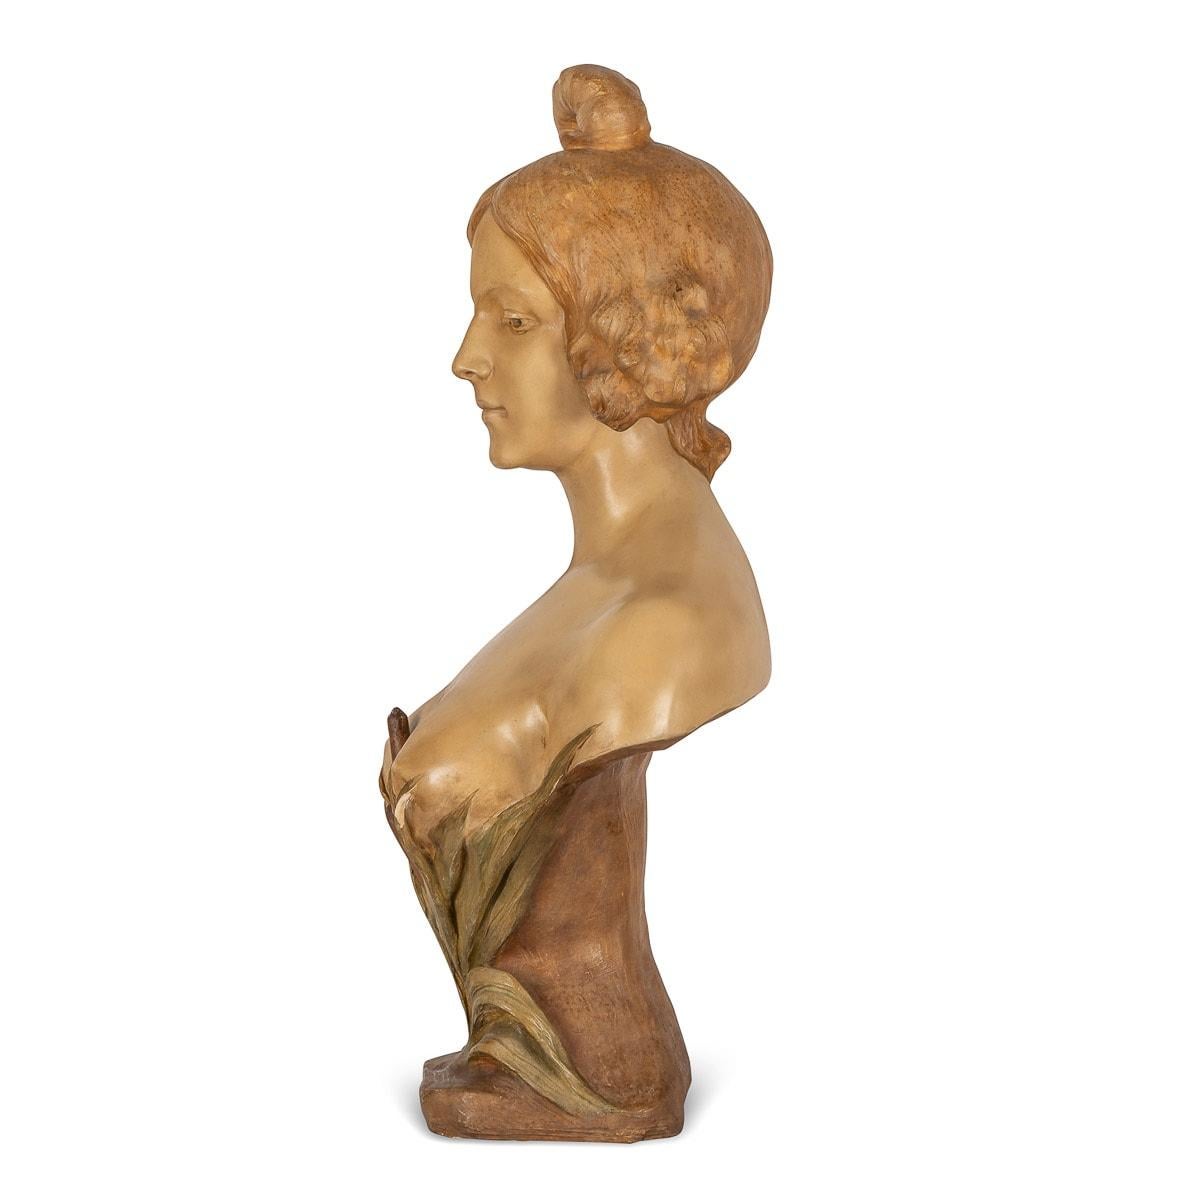 Antike Terrakotta-Skulptur einer weiblichen Büste im französischen Jugendstil des frühen 20. Diese Skulptur ist sehr schön und detailliert gearbeitet und hat eine schöne Patina. Signiert von dem italienischen Künstler A. Gory (Affortunato Gory